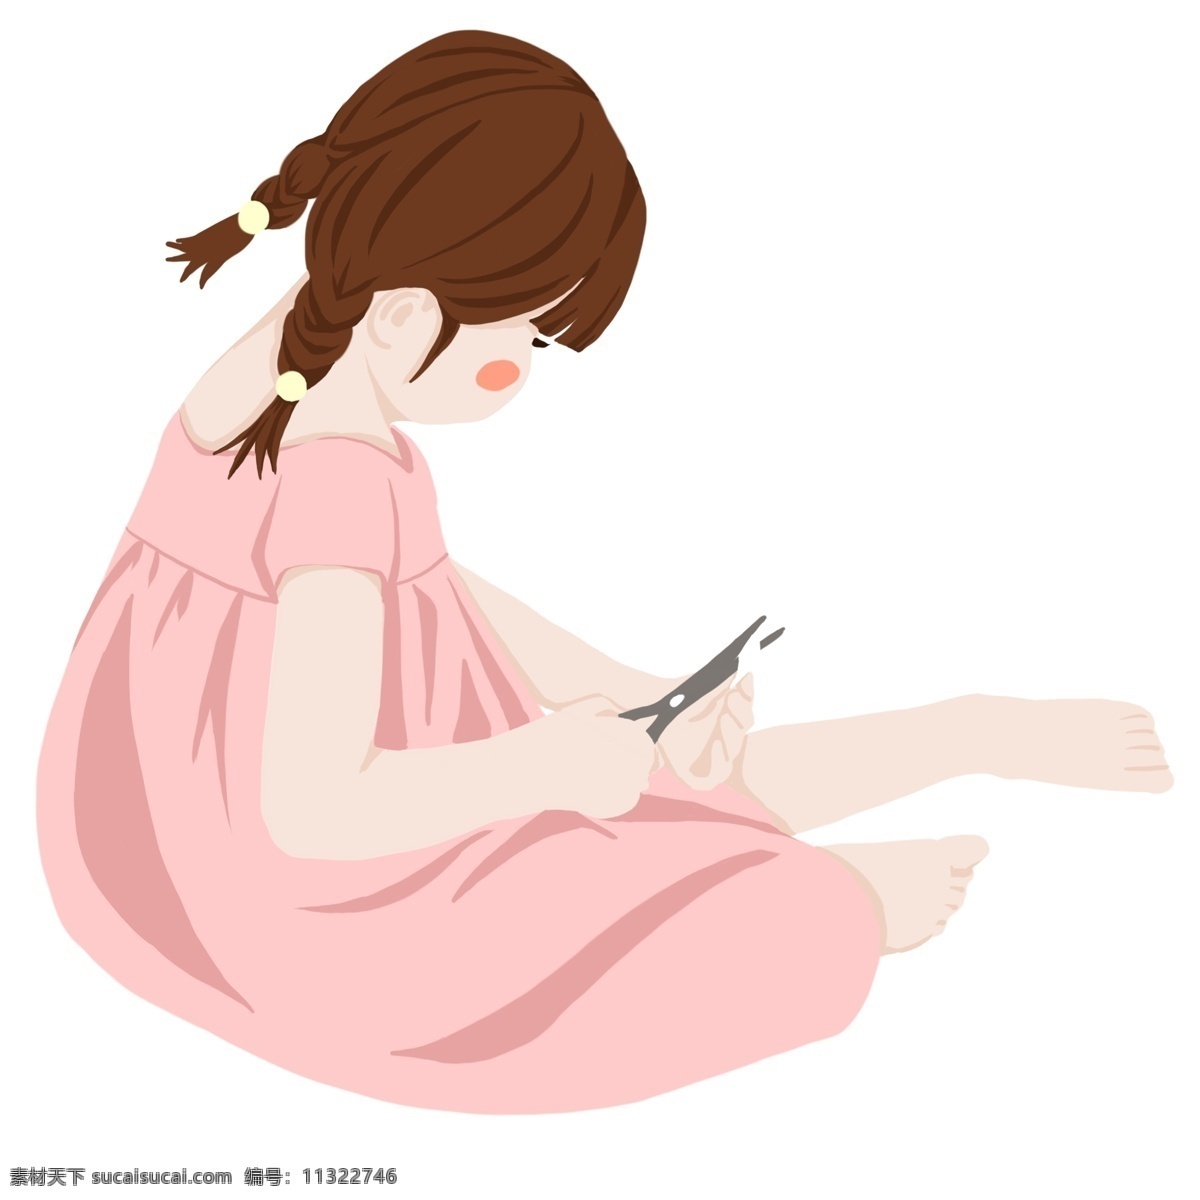 粉色 可爱 女孩 插画 衣服 卡通 彩色 小清新 创意 手绘 元素 现代 简约 装饰 图案